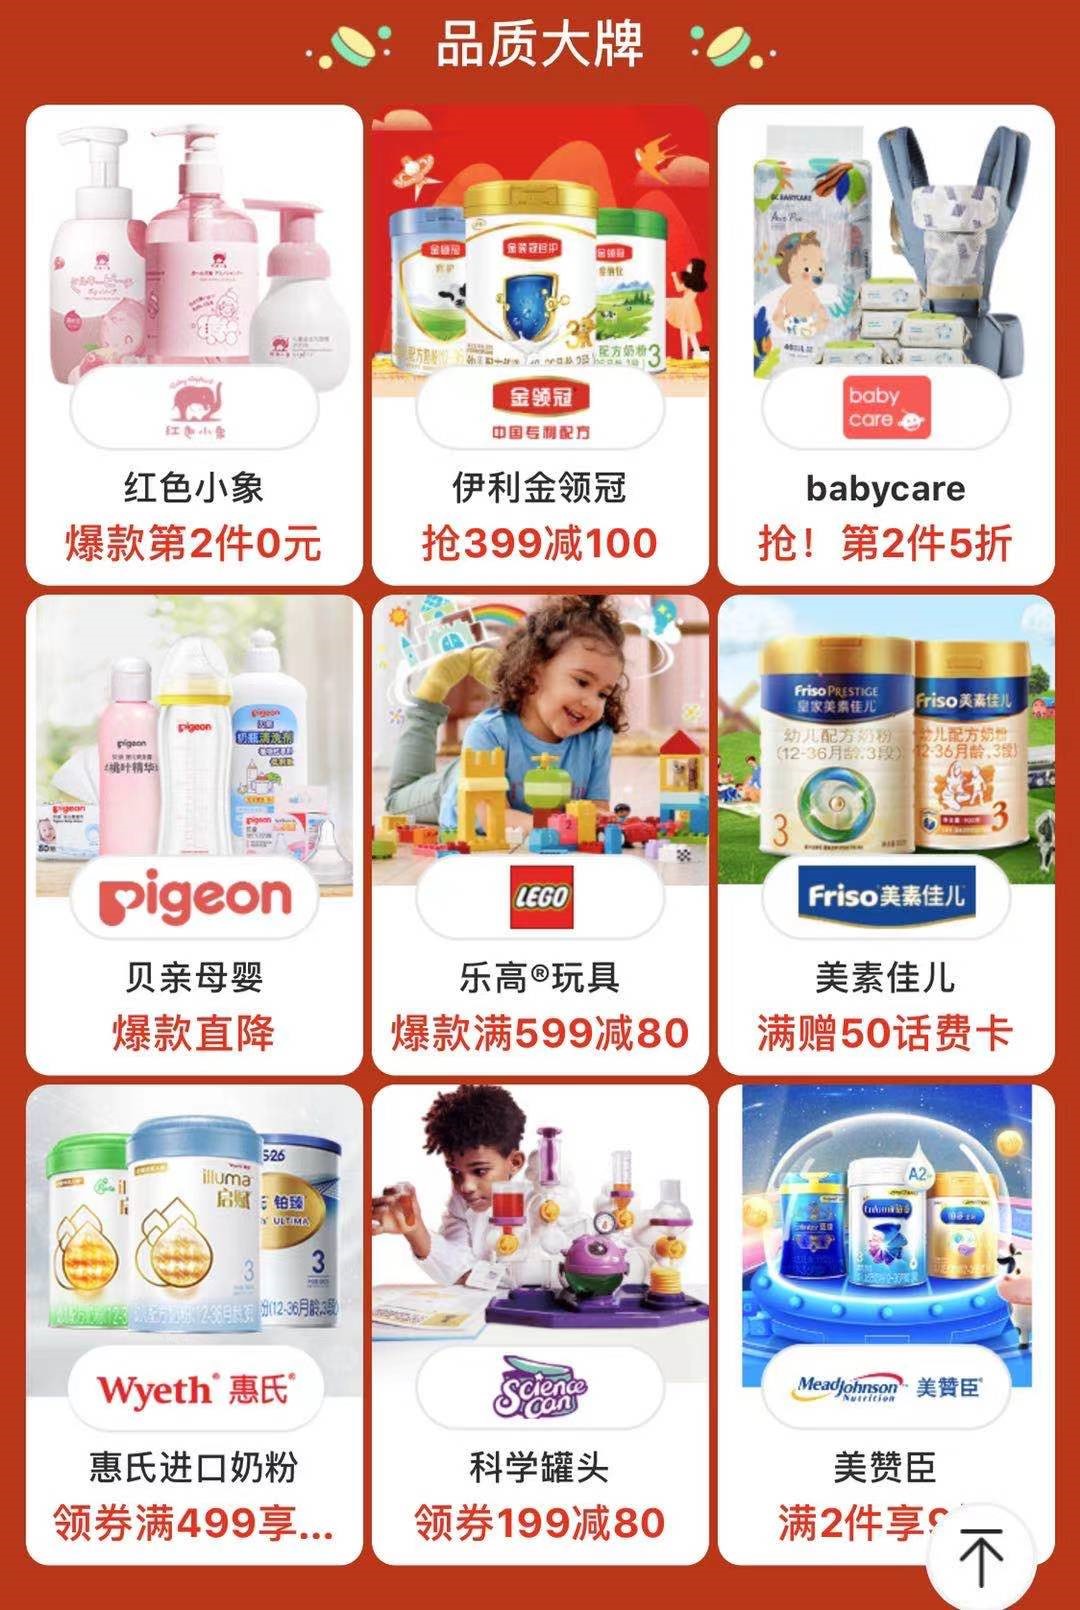 5年收获万千用户信赖 全球母婴头部品牌尽在2021京东宝贝趴